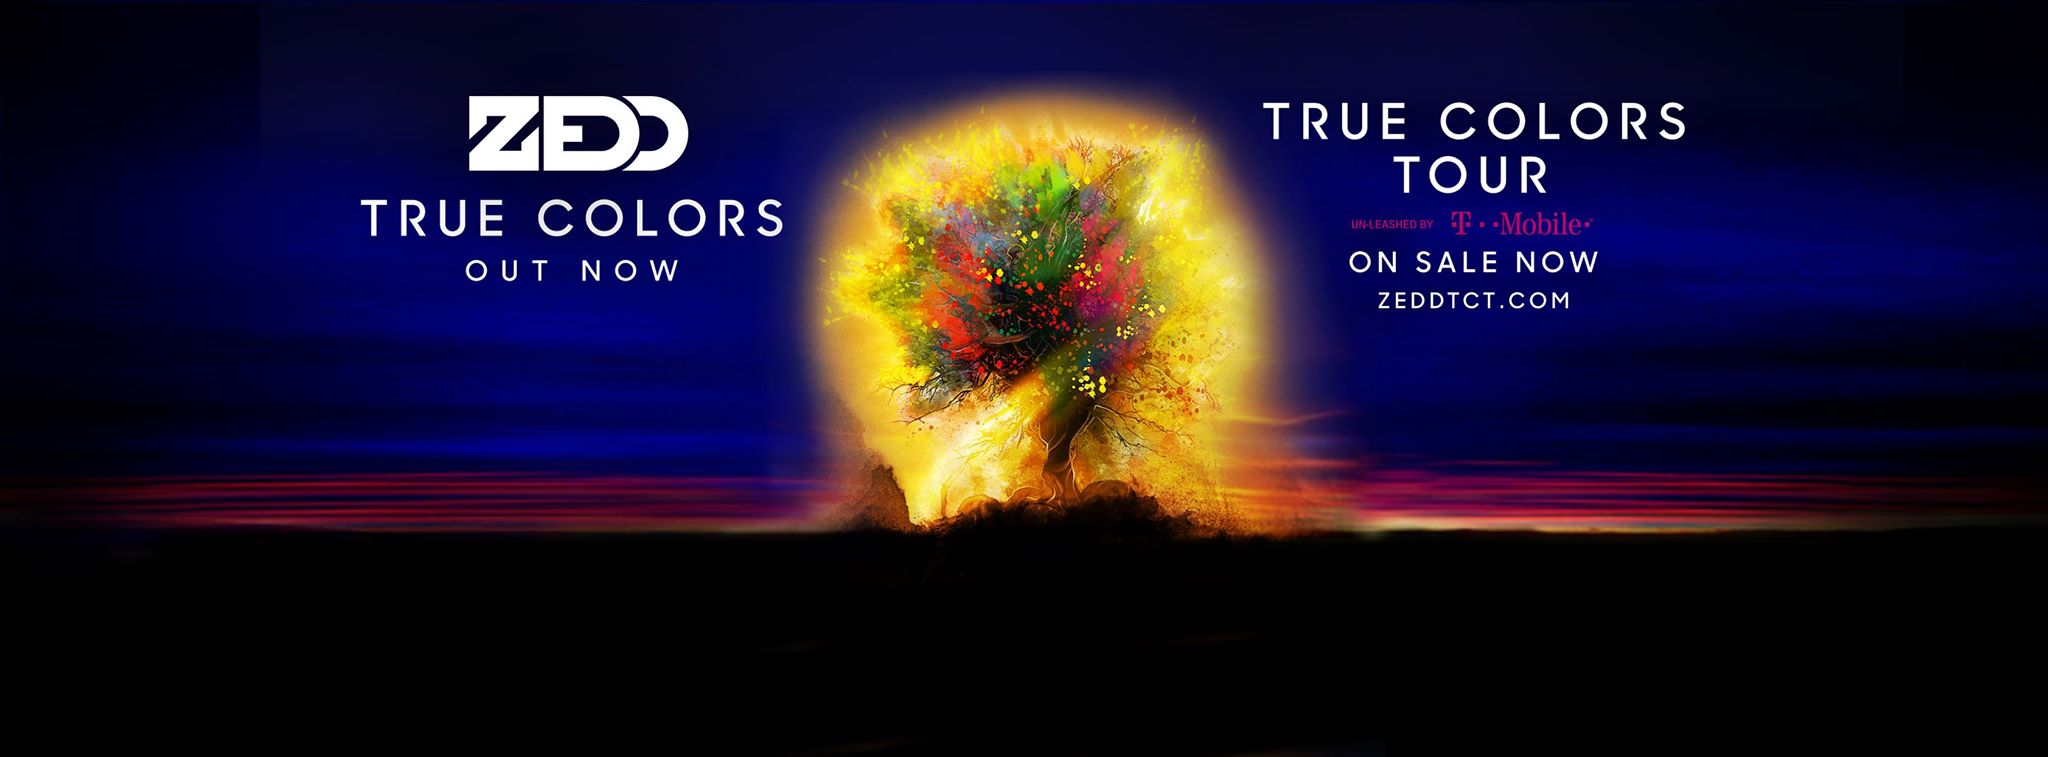 Zedd true Colors Tour